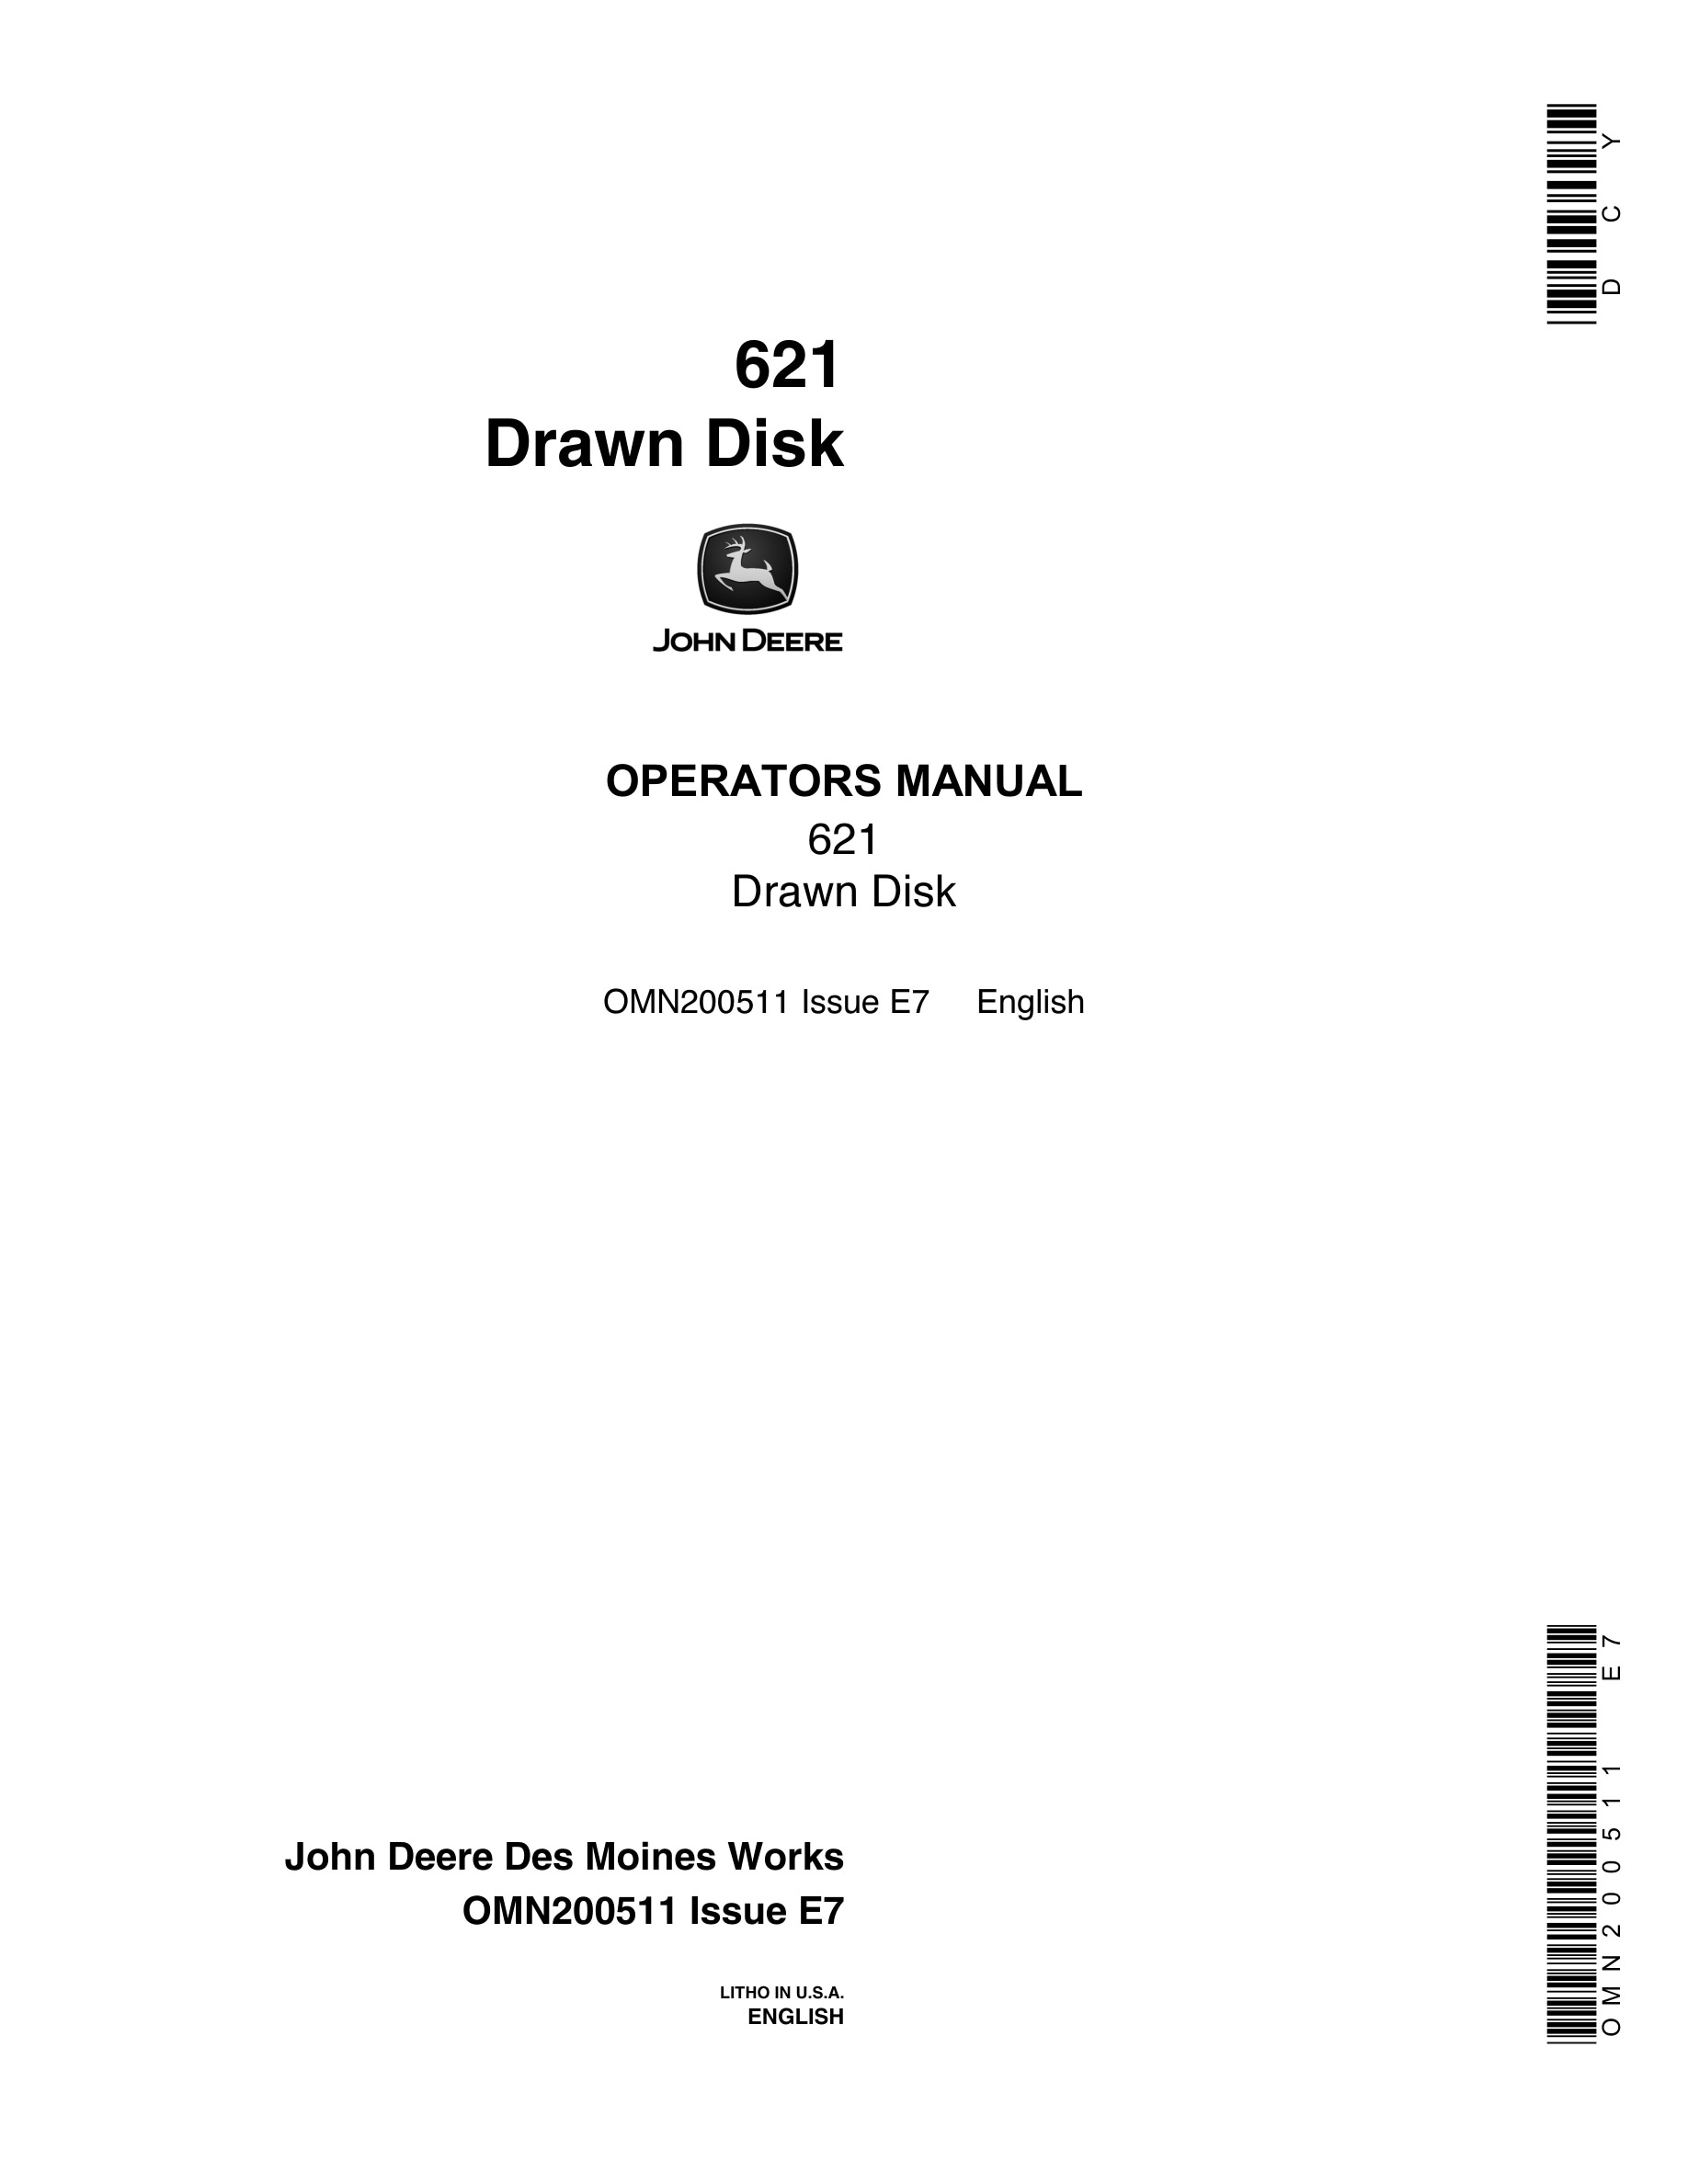 John Deere 621 DRAWN DISK Operator Manual OMN200511-1